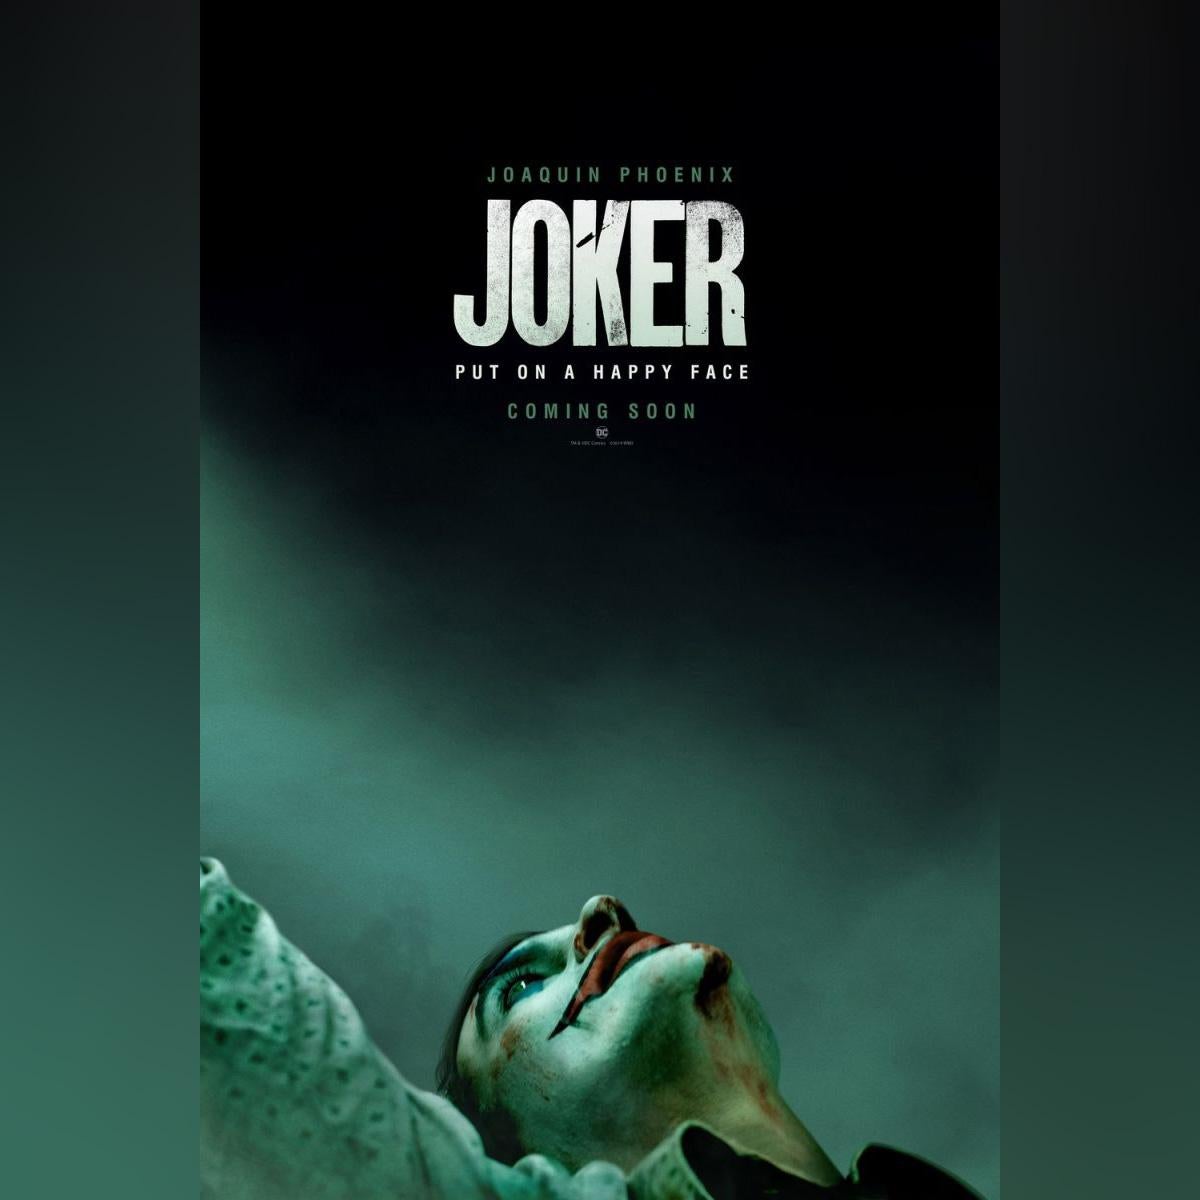 joker posters 2019